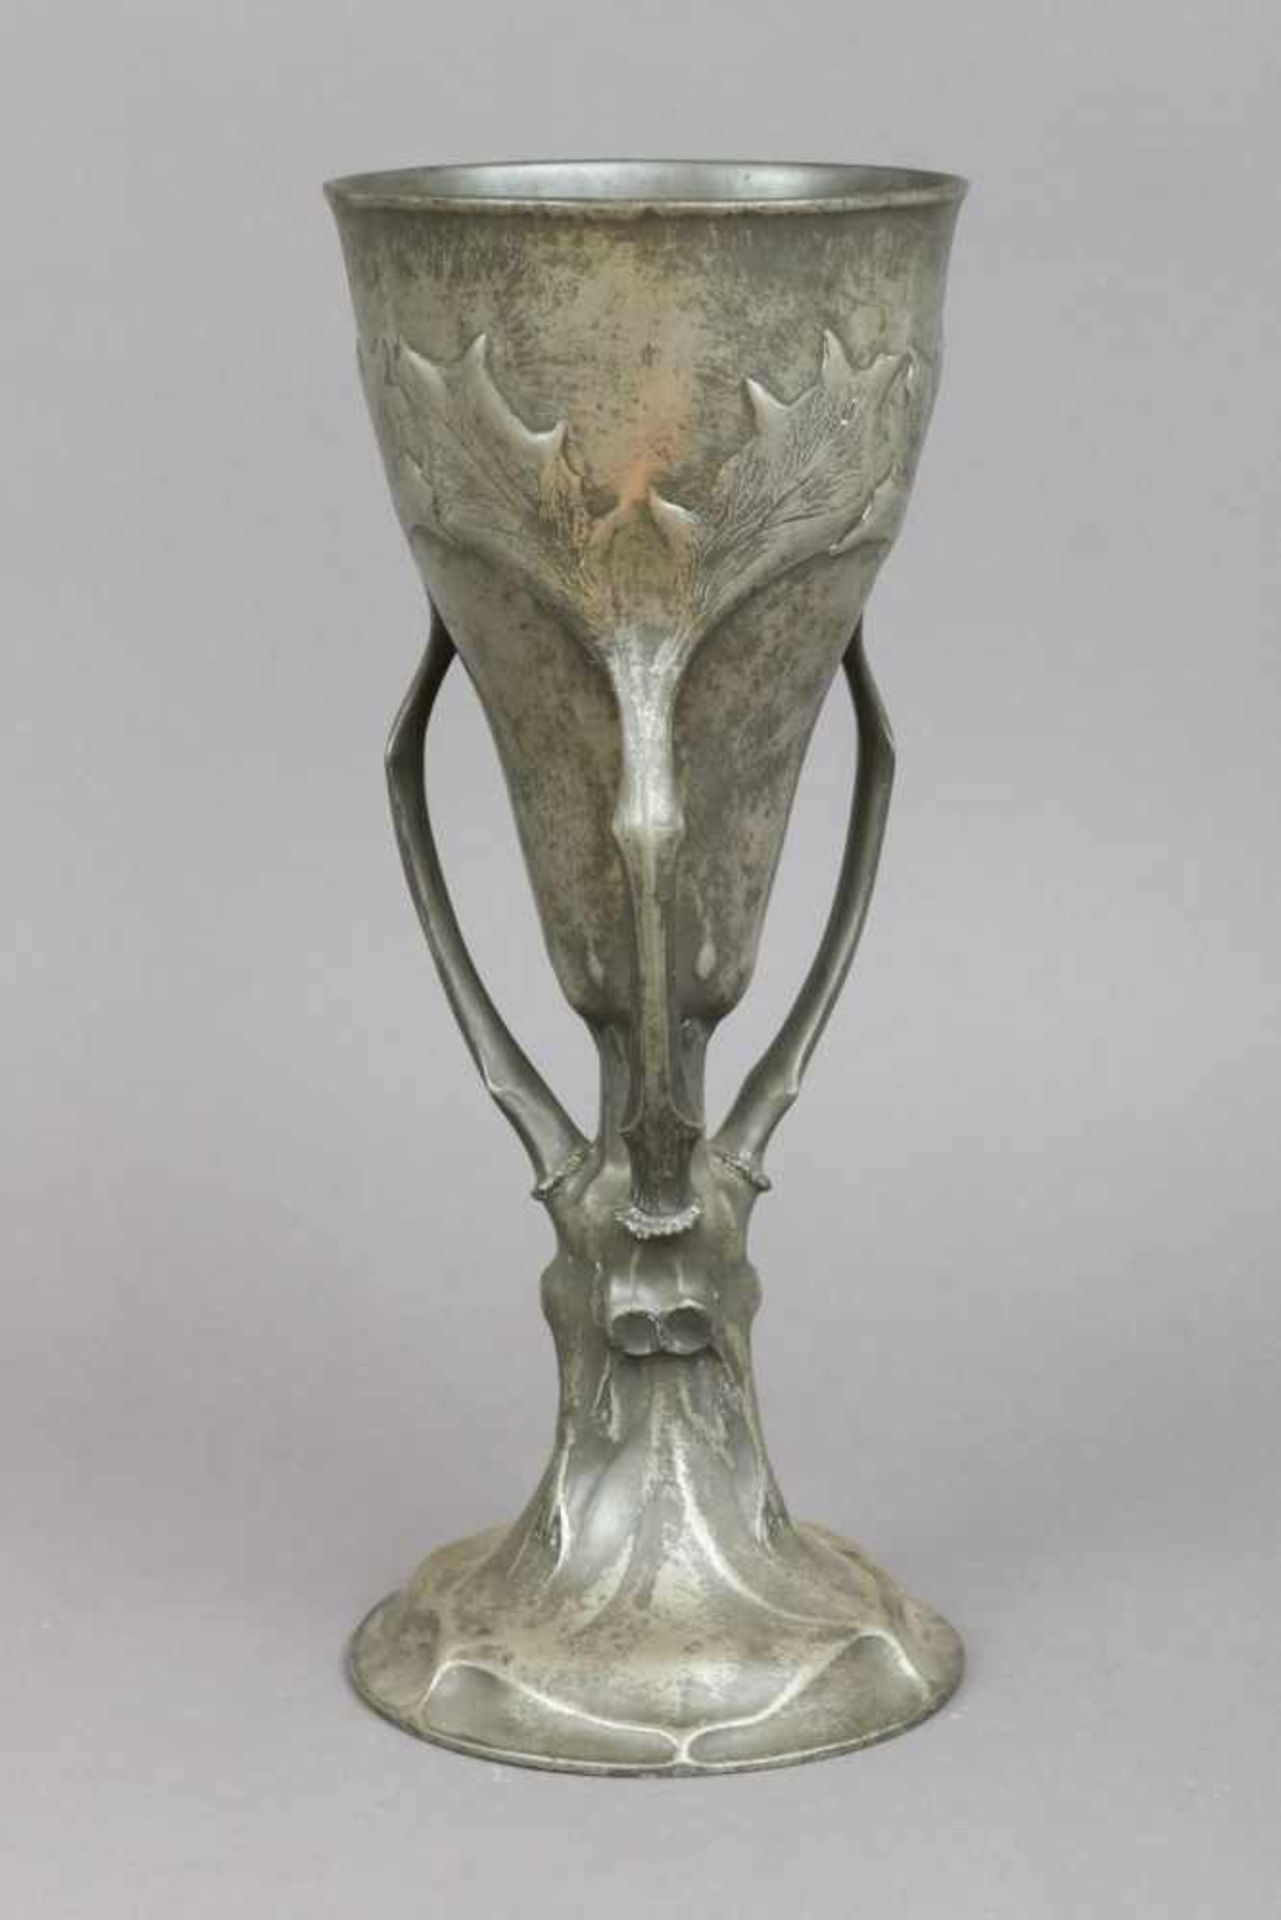 Zinn (Jagd-)Pokal des JugendstilKayser-Zinn, Modell ¨4800¨, um 1900, Relief- und plastisches